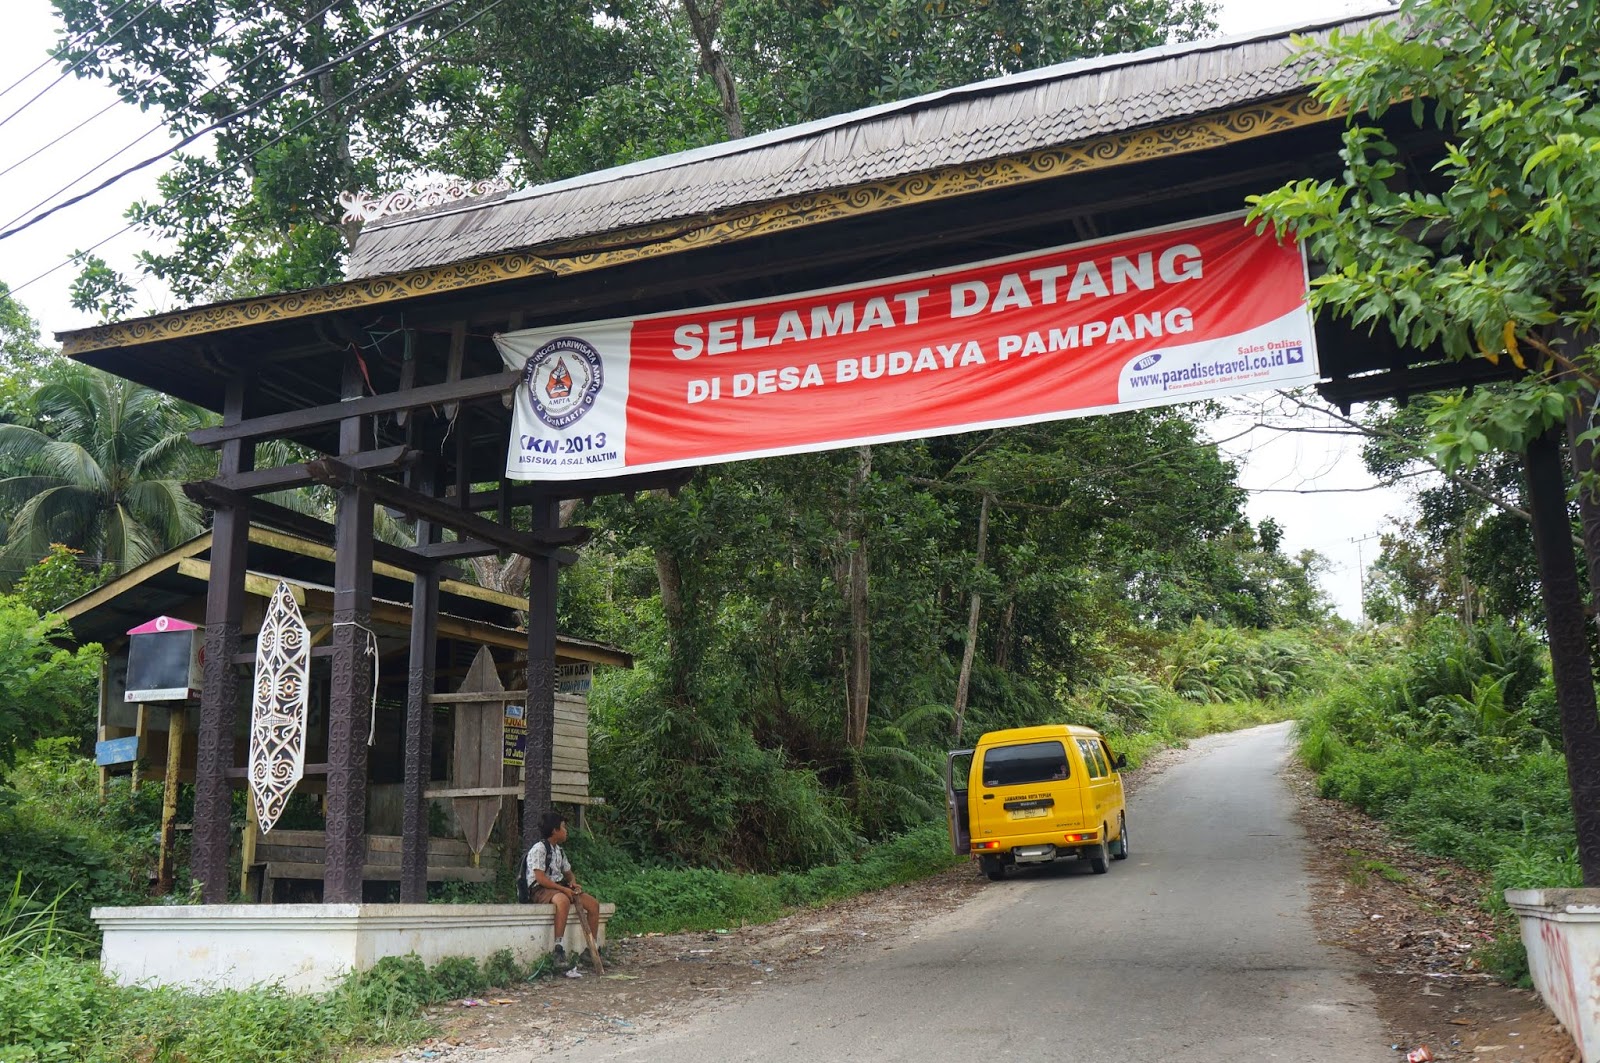 Rindu Kaltim Desa Budaya Pampang Samarinda